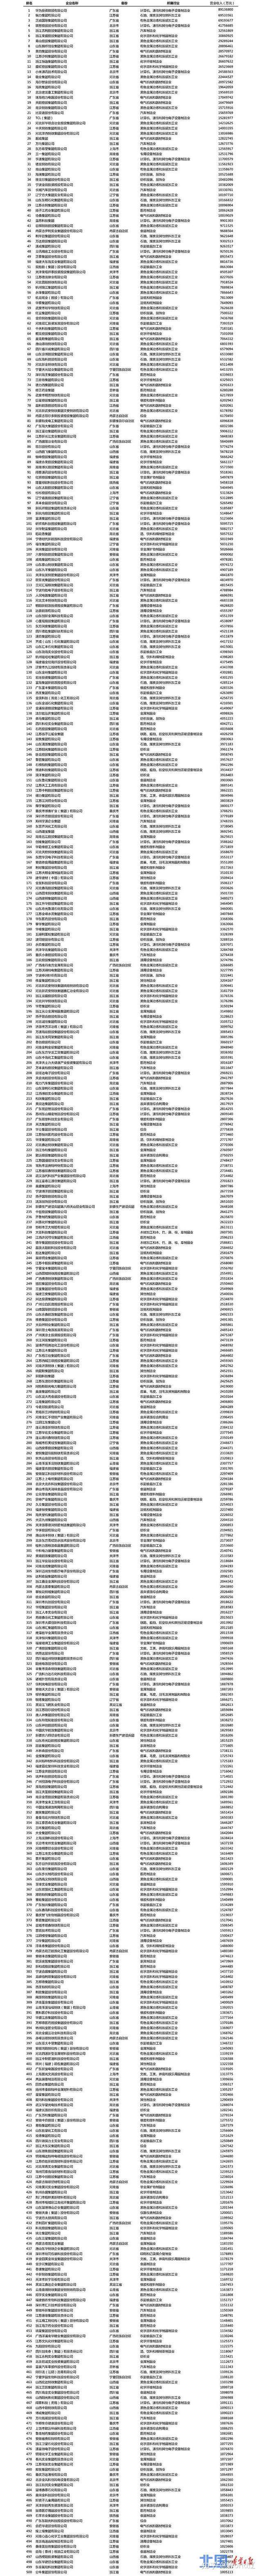 辽宁方大集团双喜临门分别入榜中国企业500强和中国民企500强名单